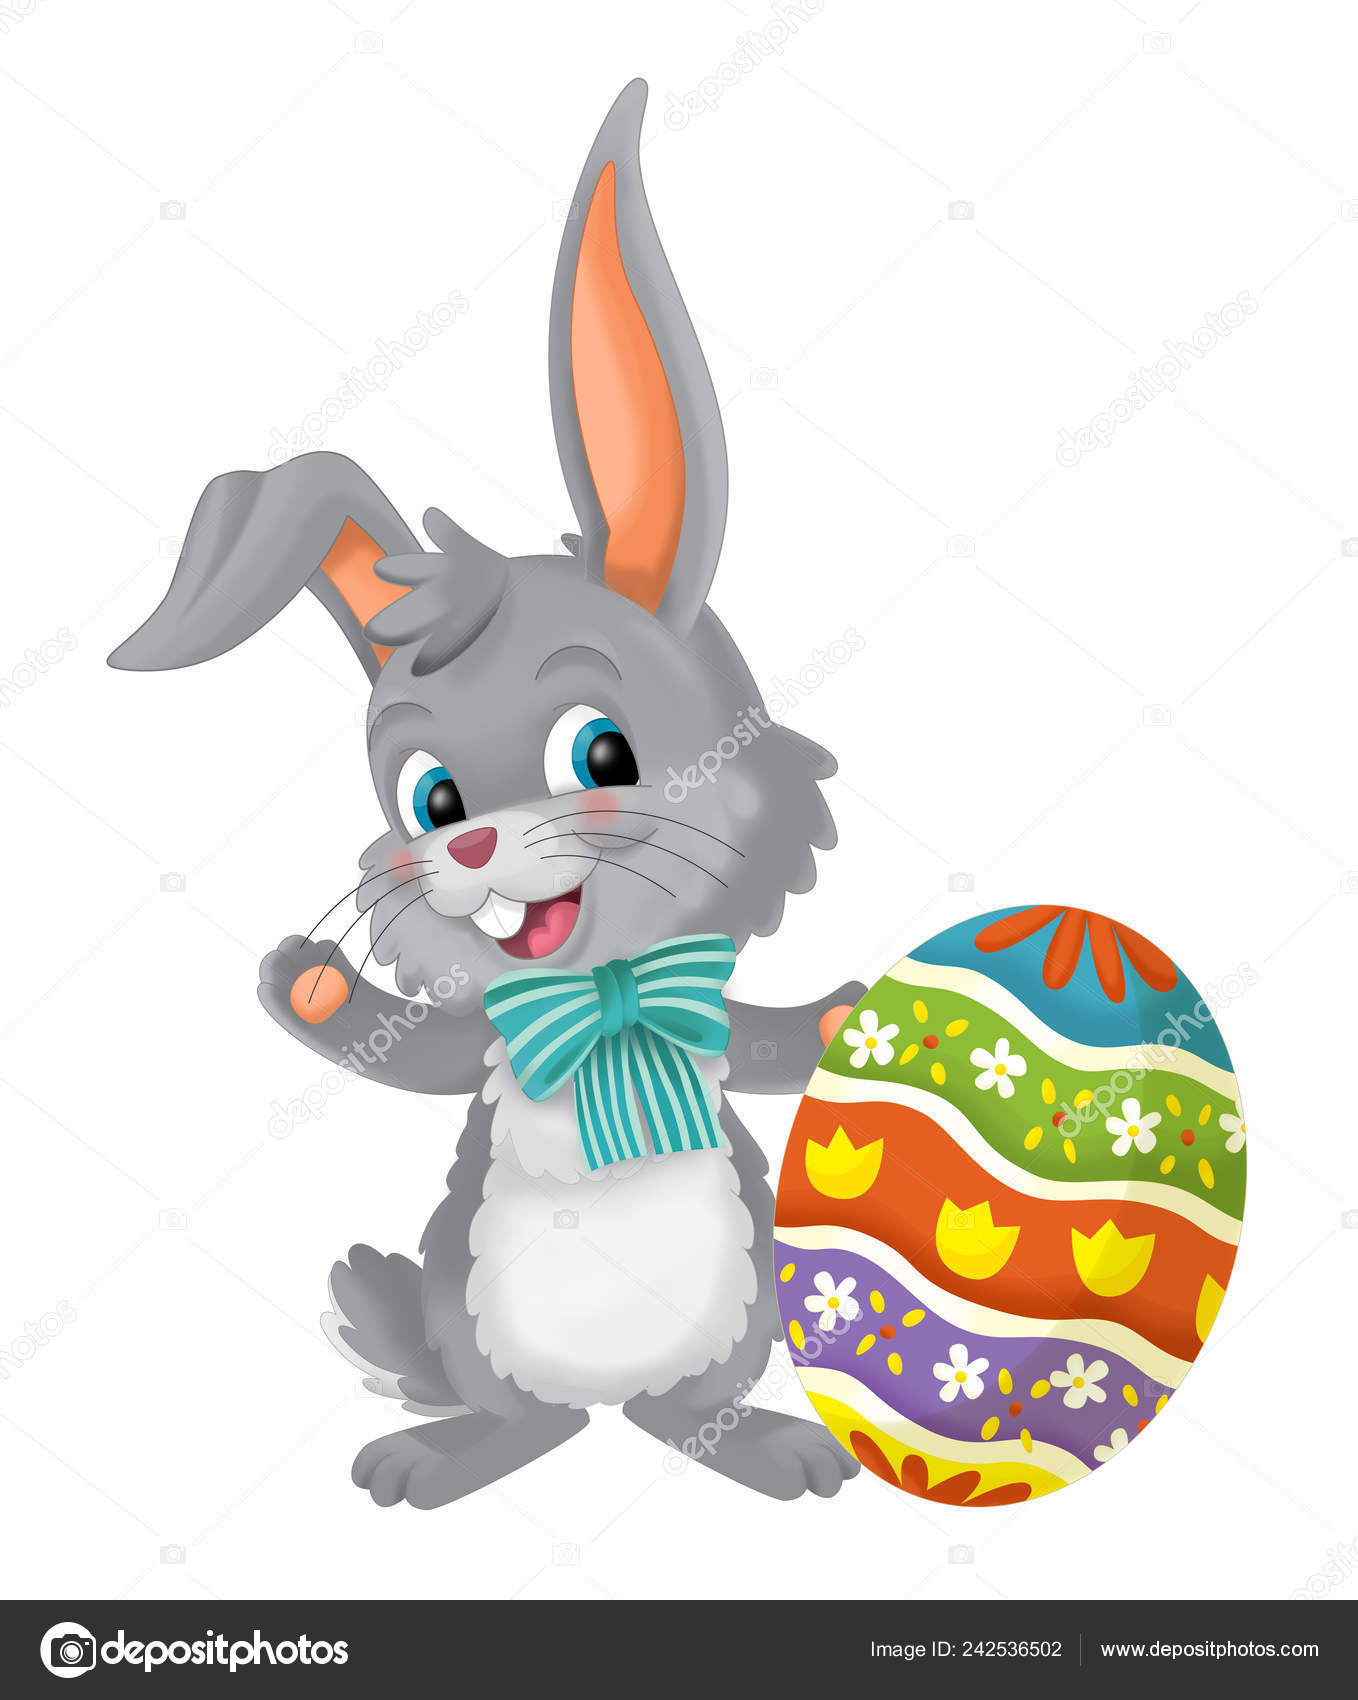 Cartoon Happy Easter Rabbit Easter Egg White Background Illustration  Children Stock Photo by ©illustrator_hft 242536502